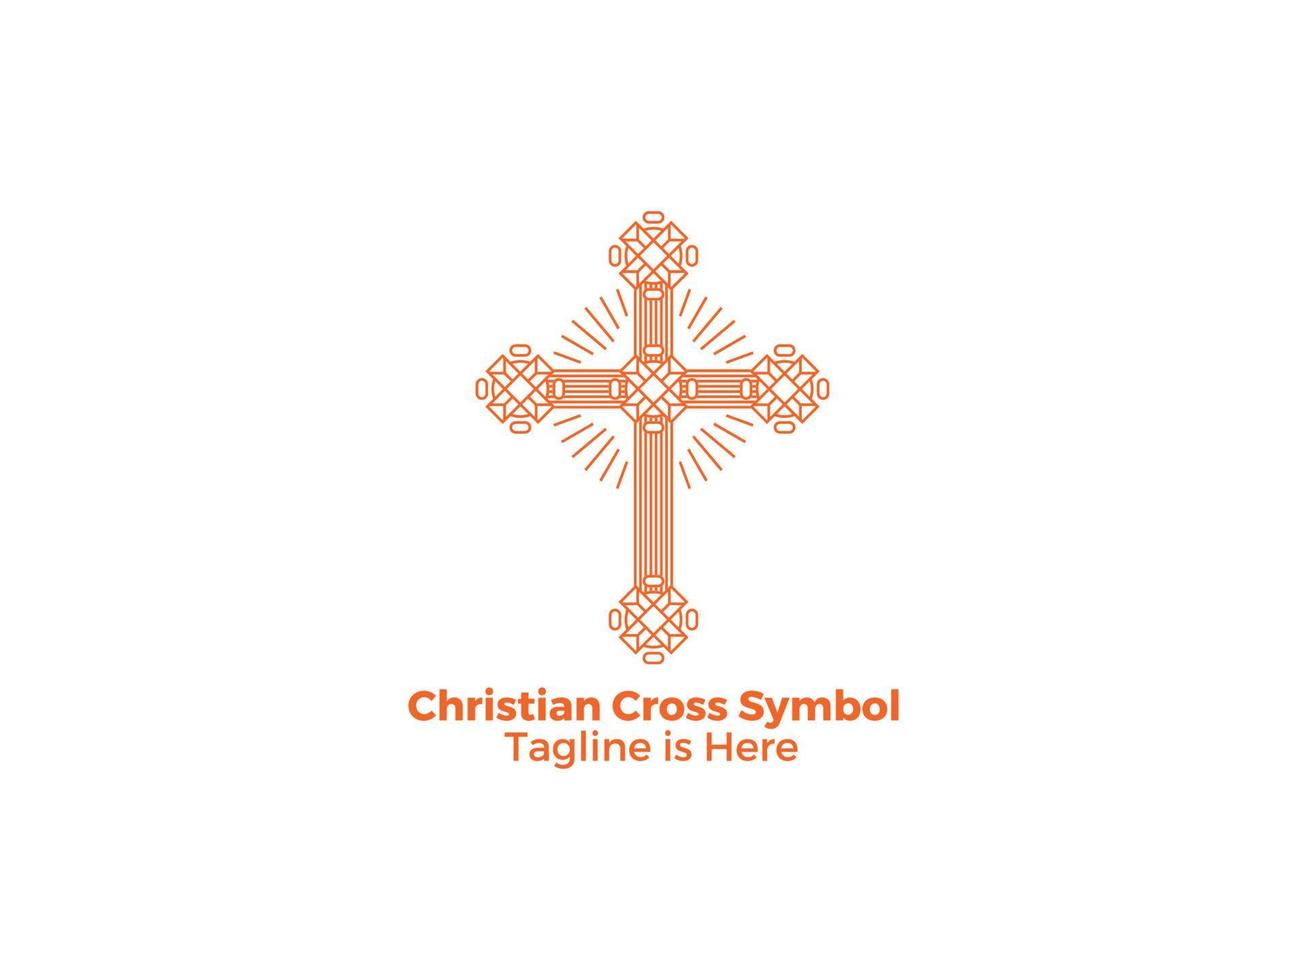 croce religione cattolicesimo simboli cristiani gesù chiesa vettore libero